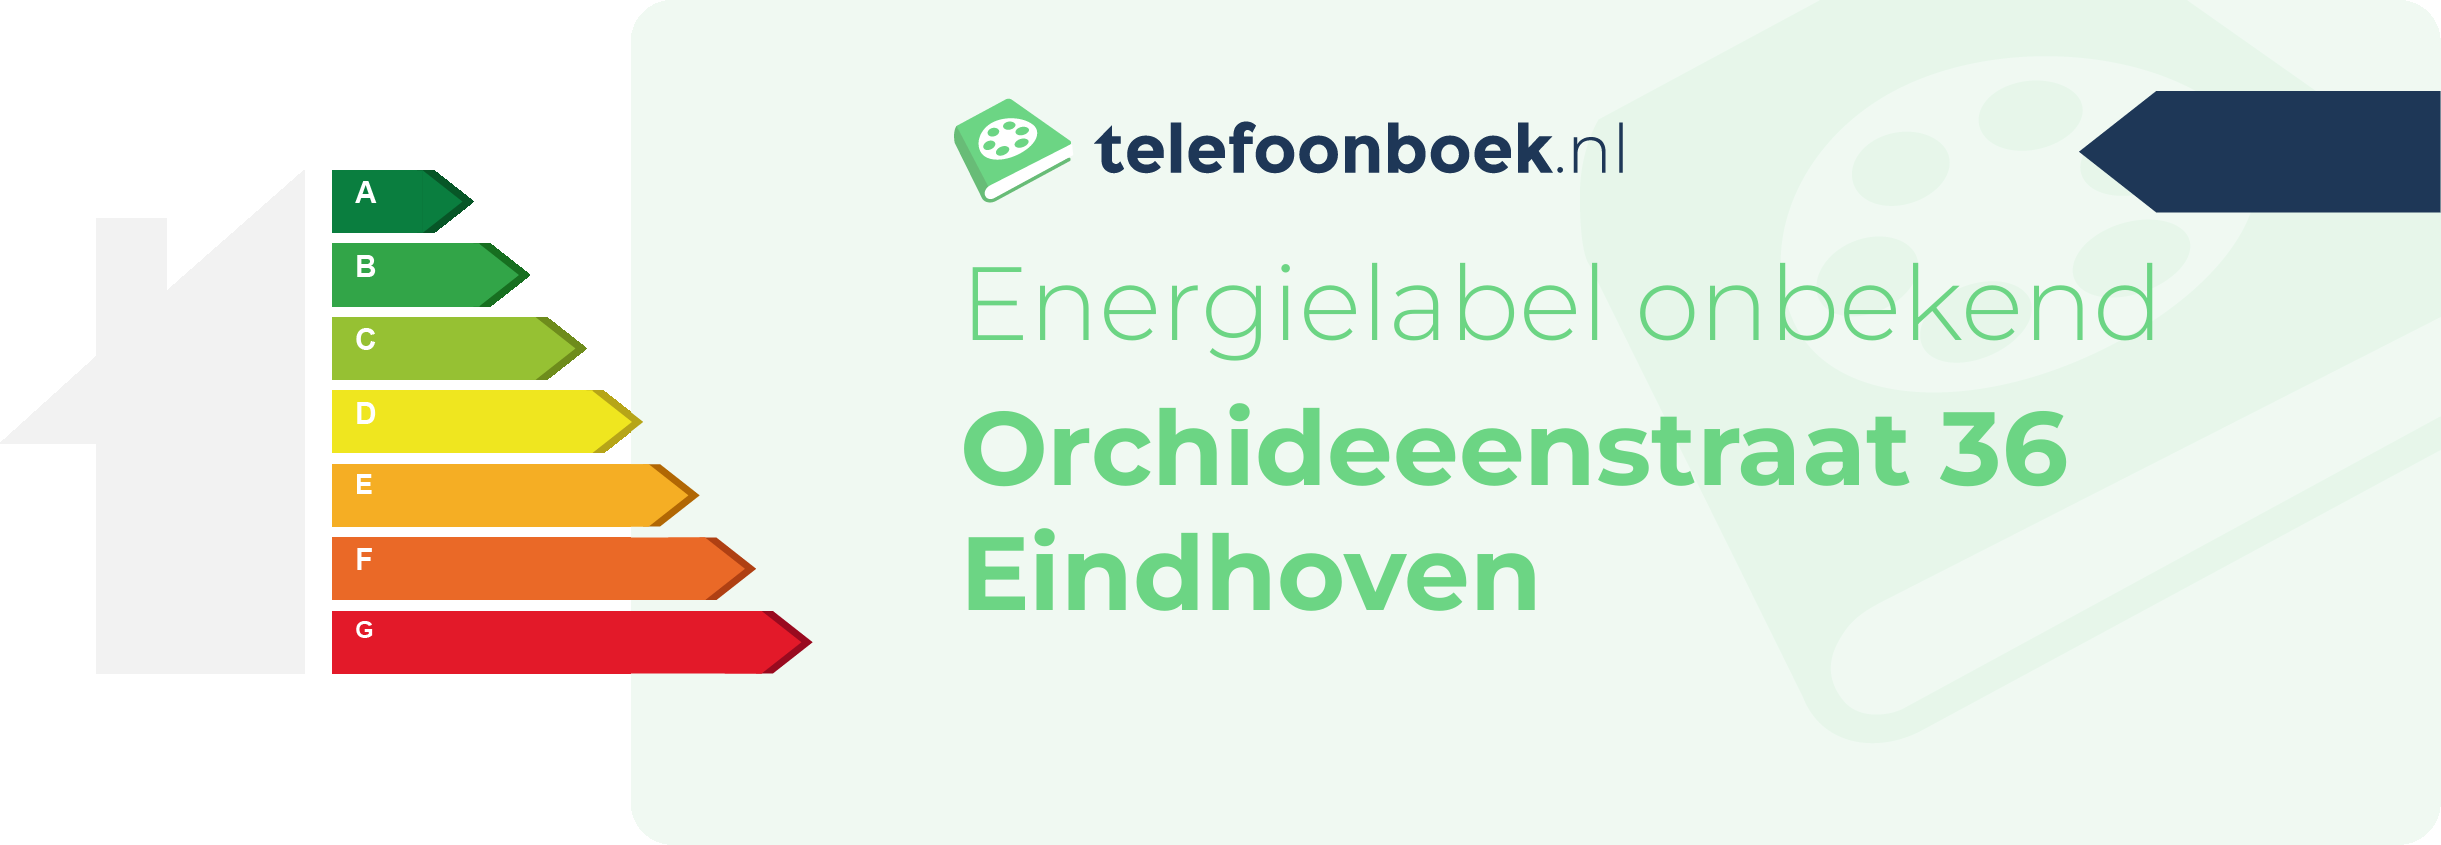 Energielabel Orchideeenstraat 36 Eindhoven